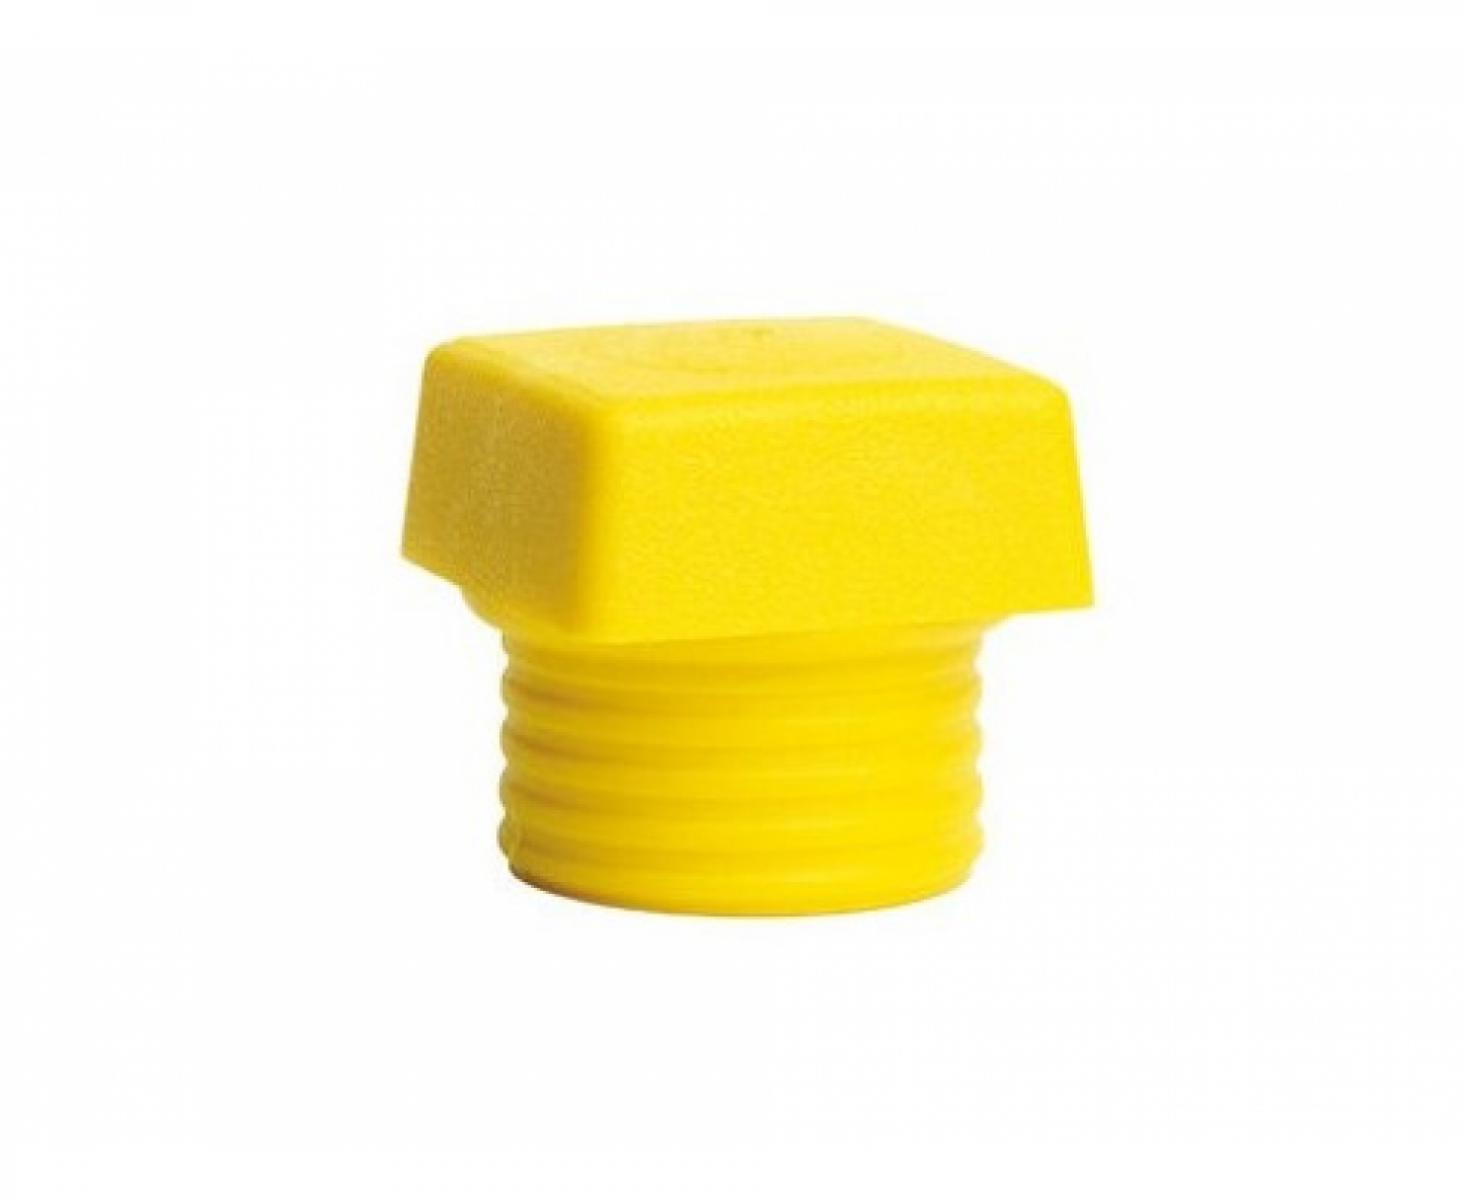 Четырехгранная головка желтая для молотка Wiha Safety 833-5 26438 из среднетвердого полиуретана